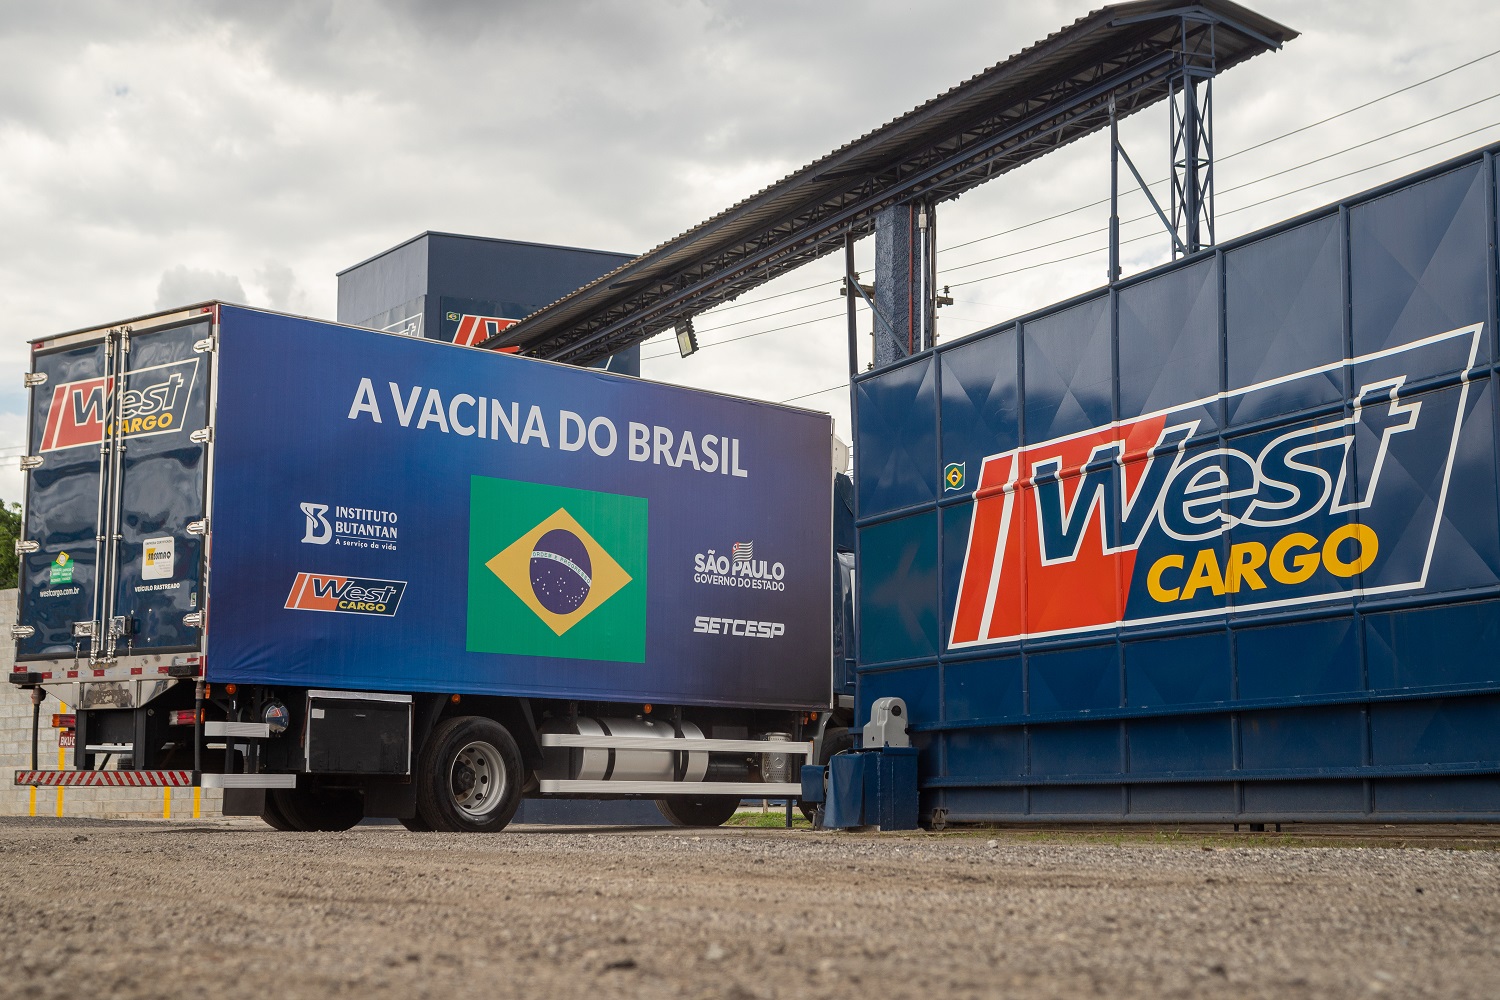 Empresa Amiga da Criança: West Cargo transporta gratuitamente vacinas contra a COVID-19 